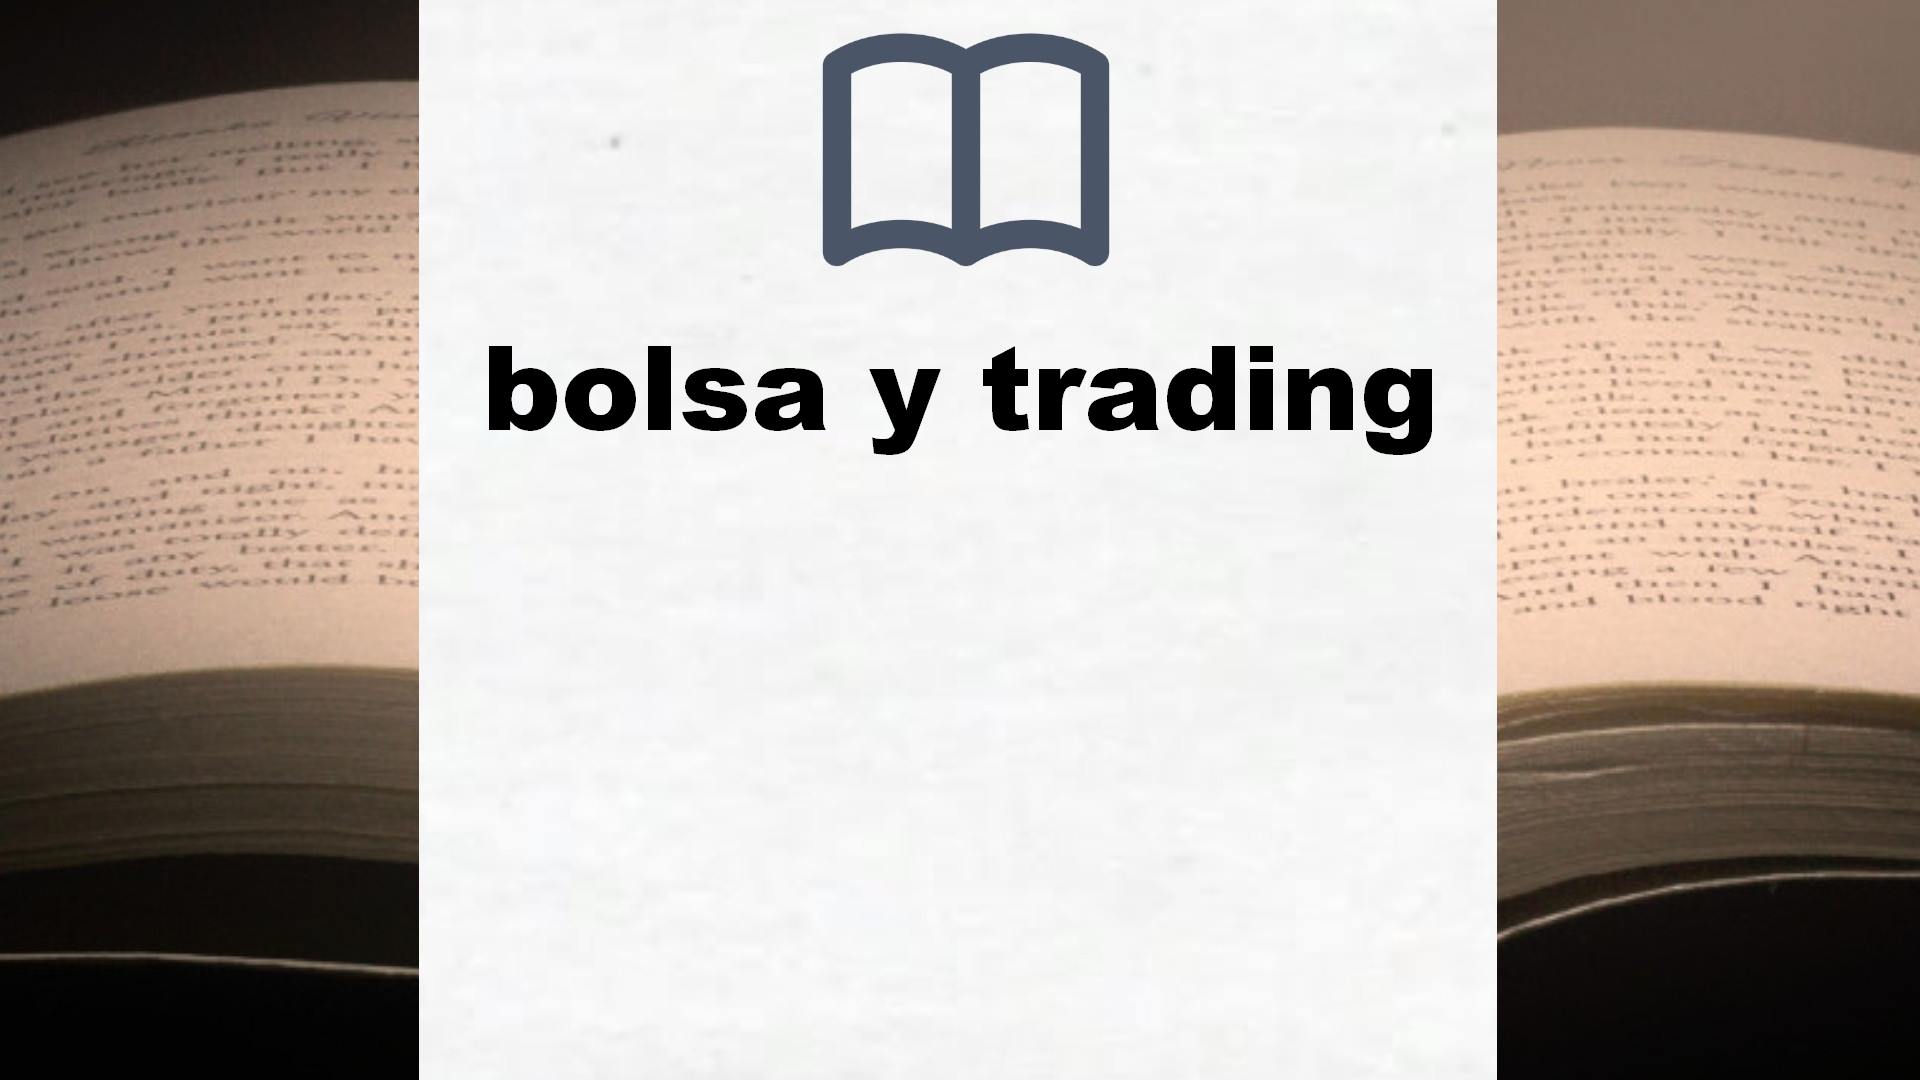 Libros sobre bolsa y trading